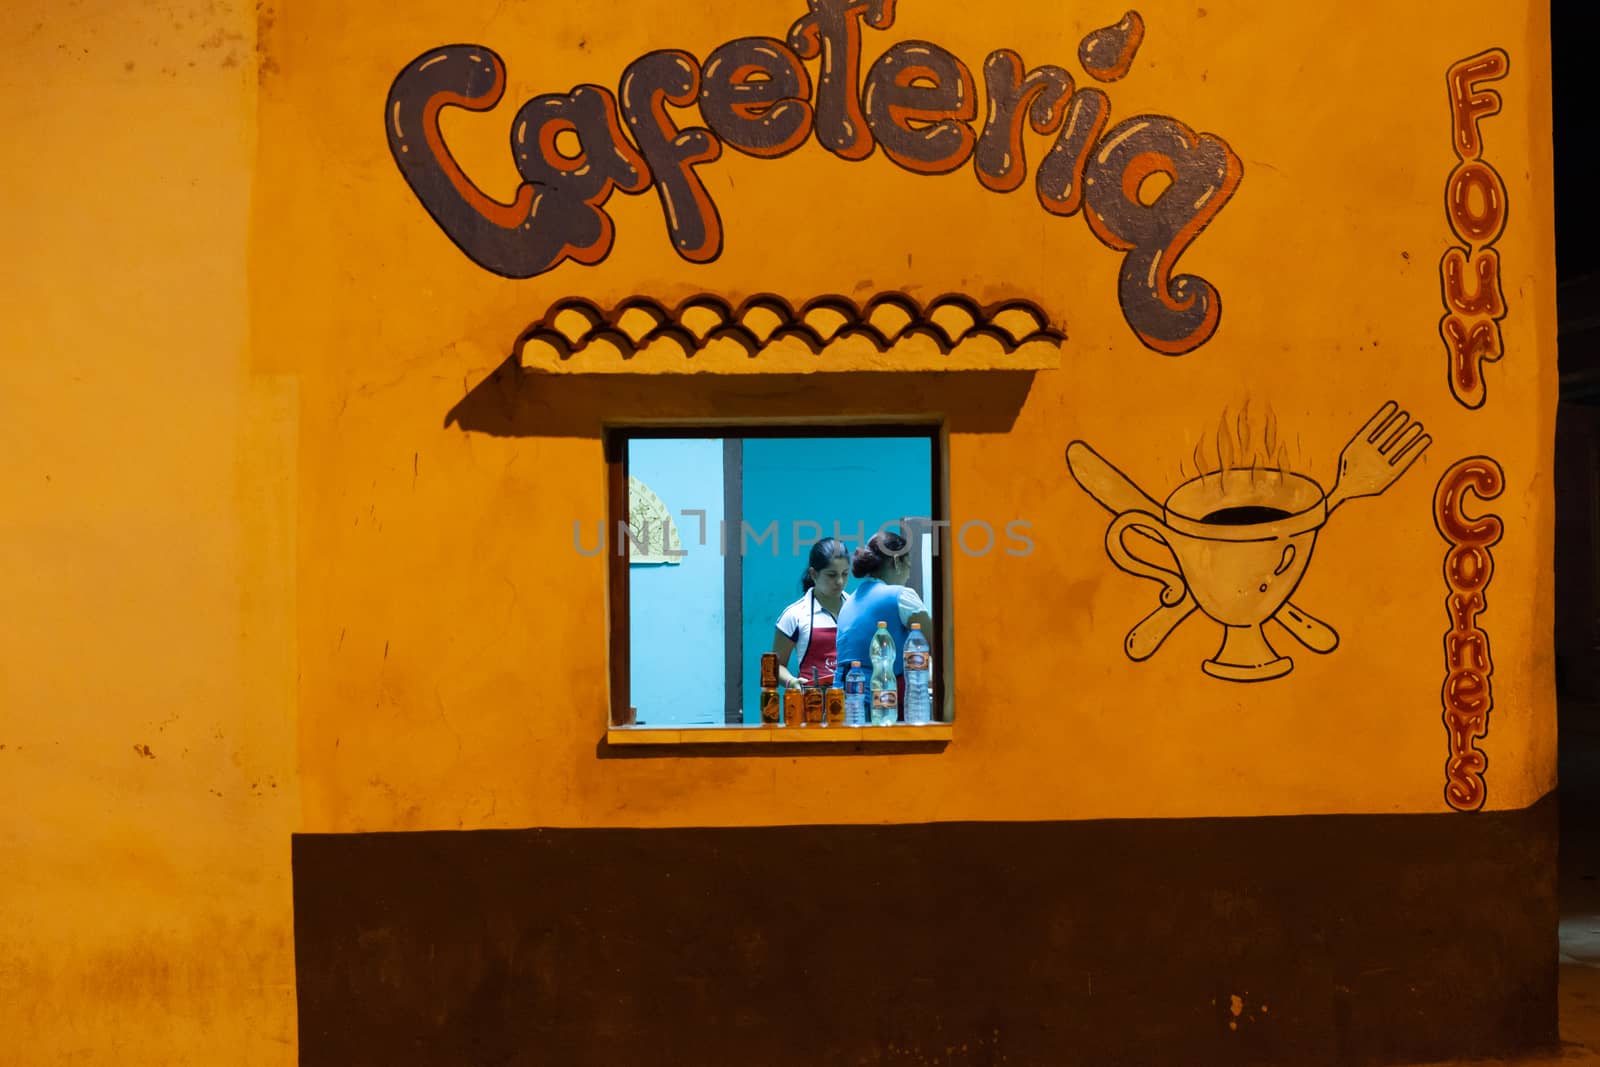 Small cafeteria in Trinidad, Cuba by vlad-m